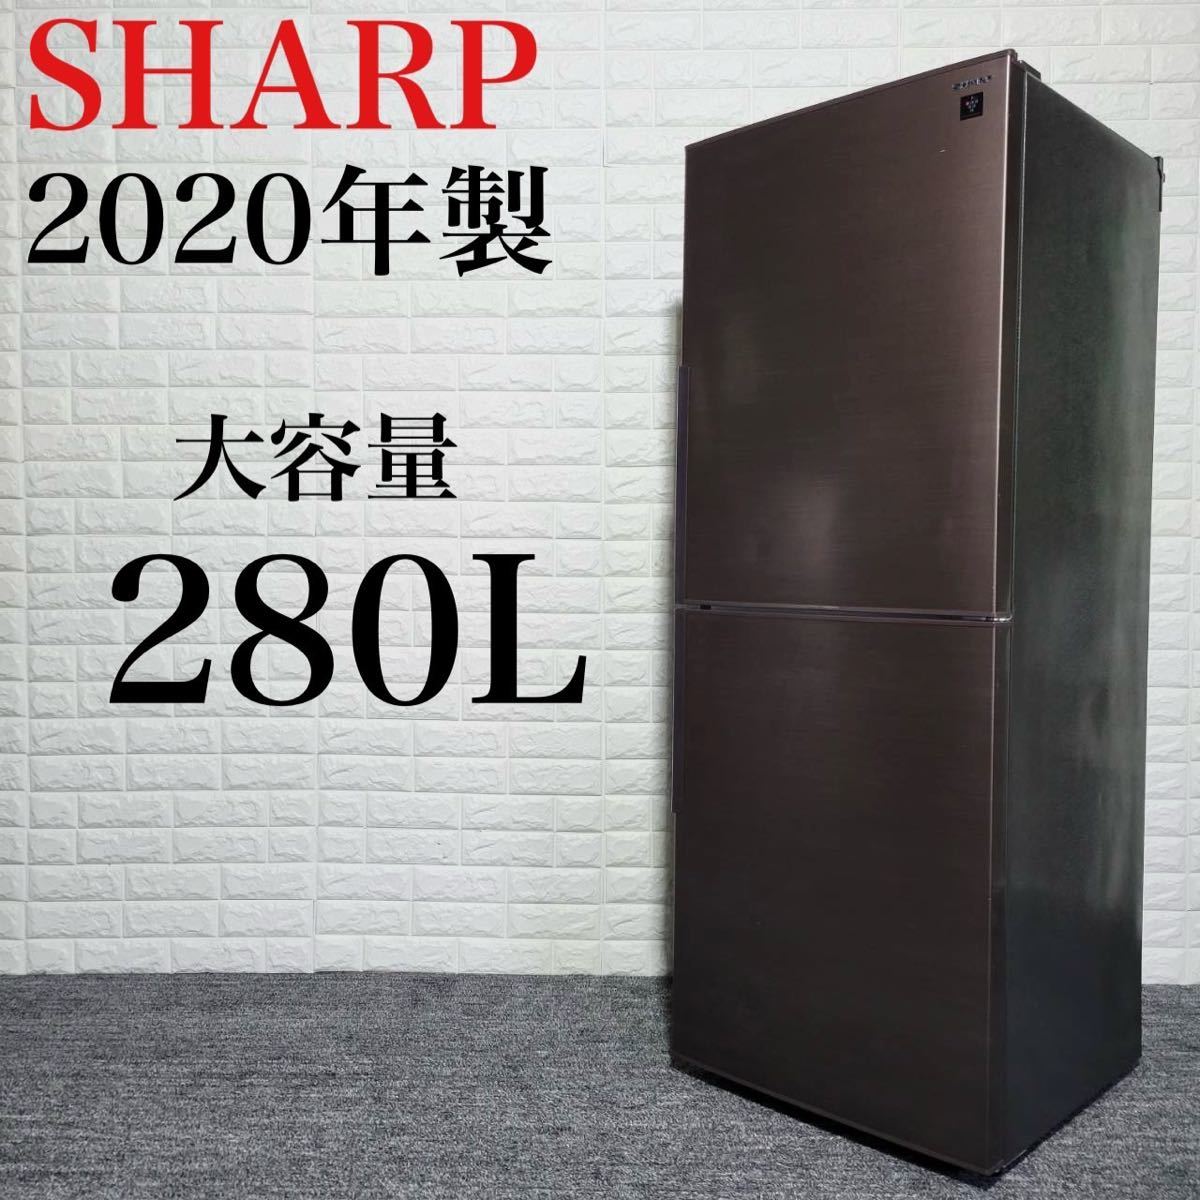 新しいエルメス 冷蔵庫 SHARP SJ-PD28F-T M0622 格安 高年式 2020年